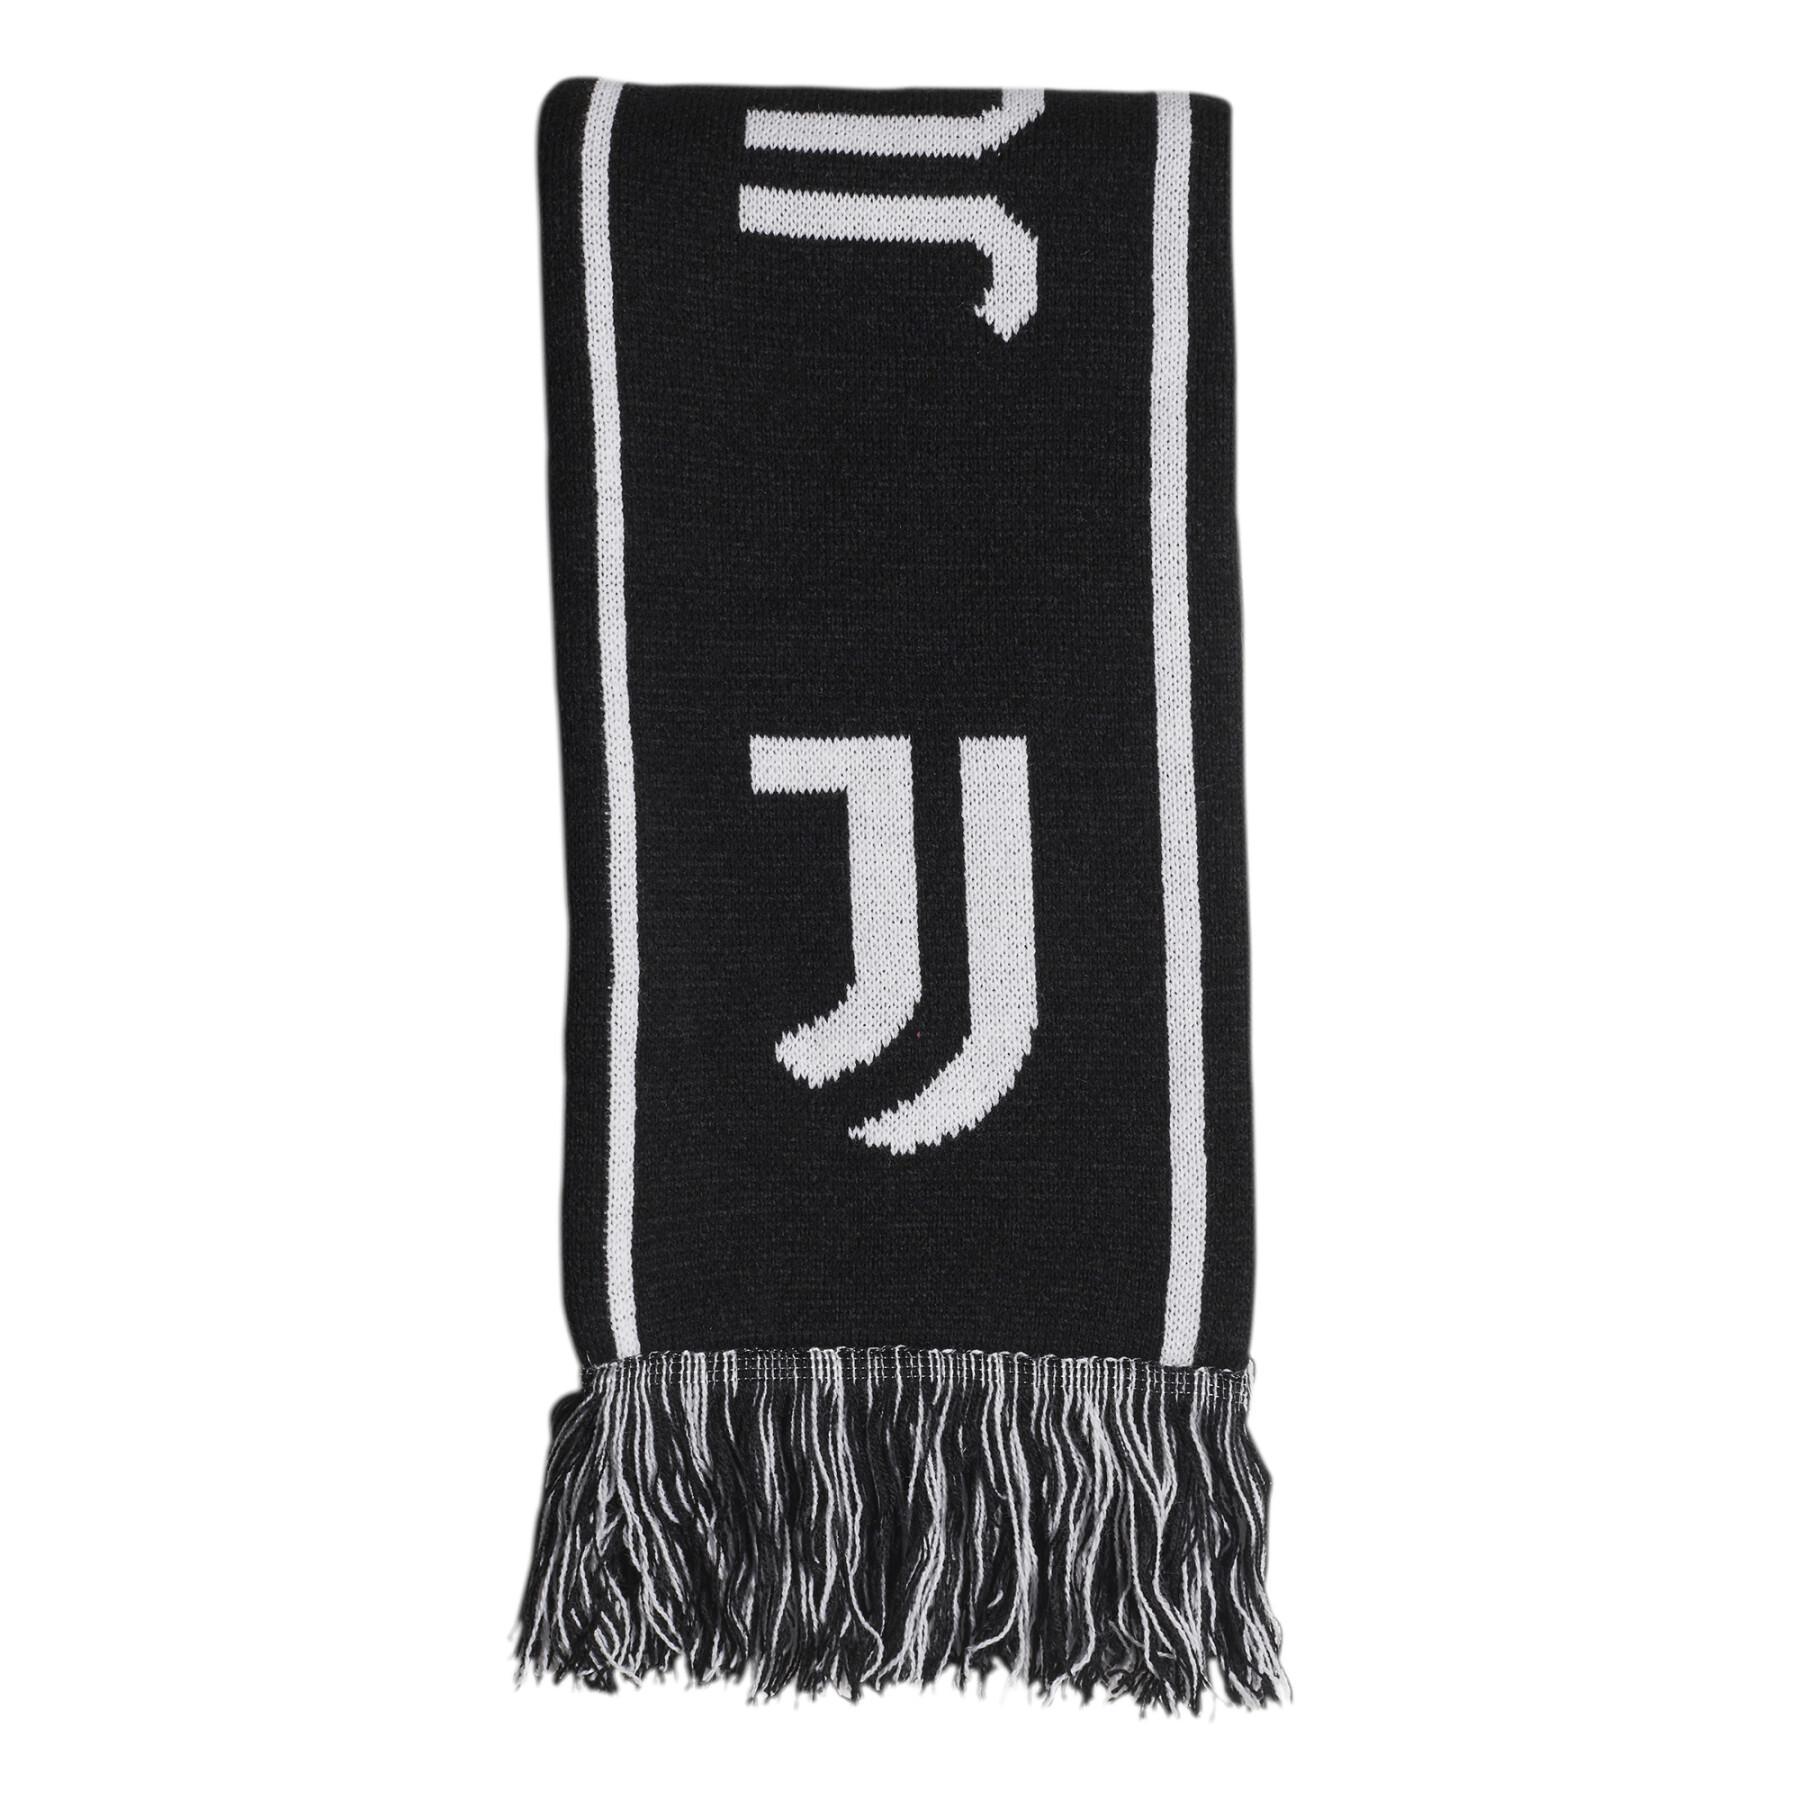 Sciarpa Juventus Turin 2021/22